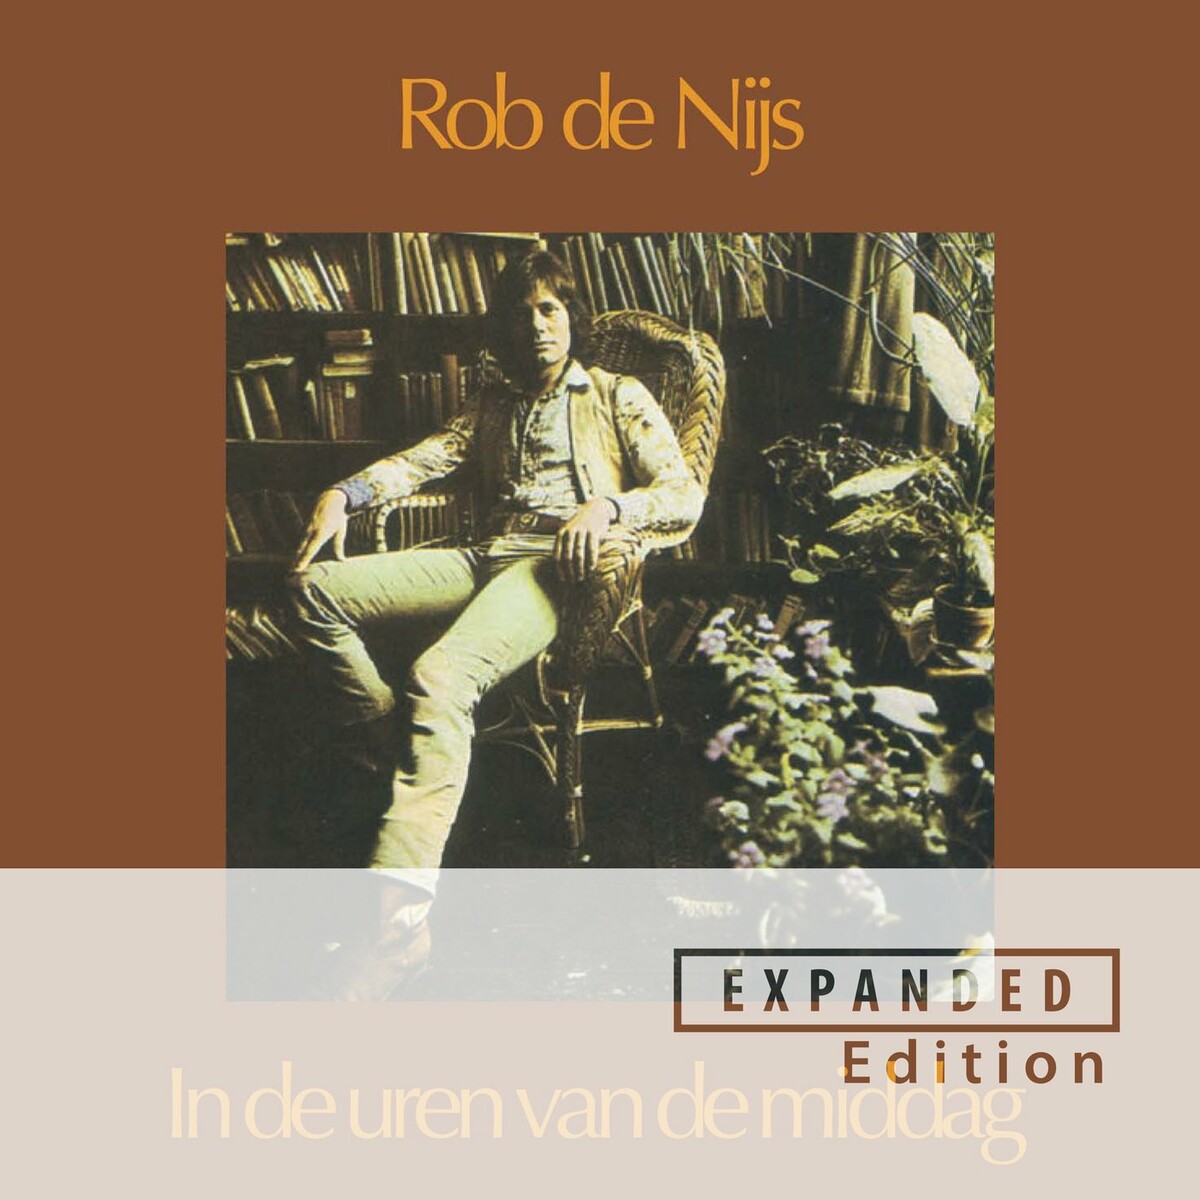 Rob De Nijs - In De Uren Van De Middag [Expanded Edition] (1973)